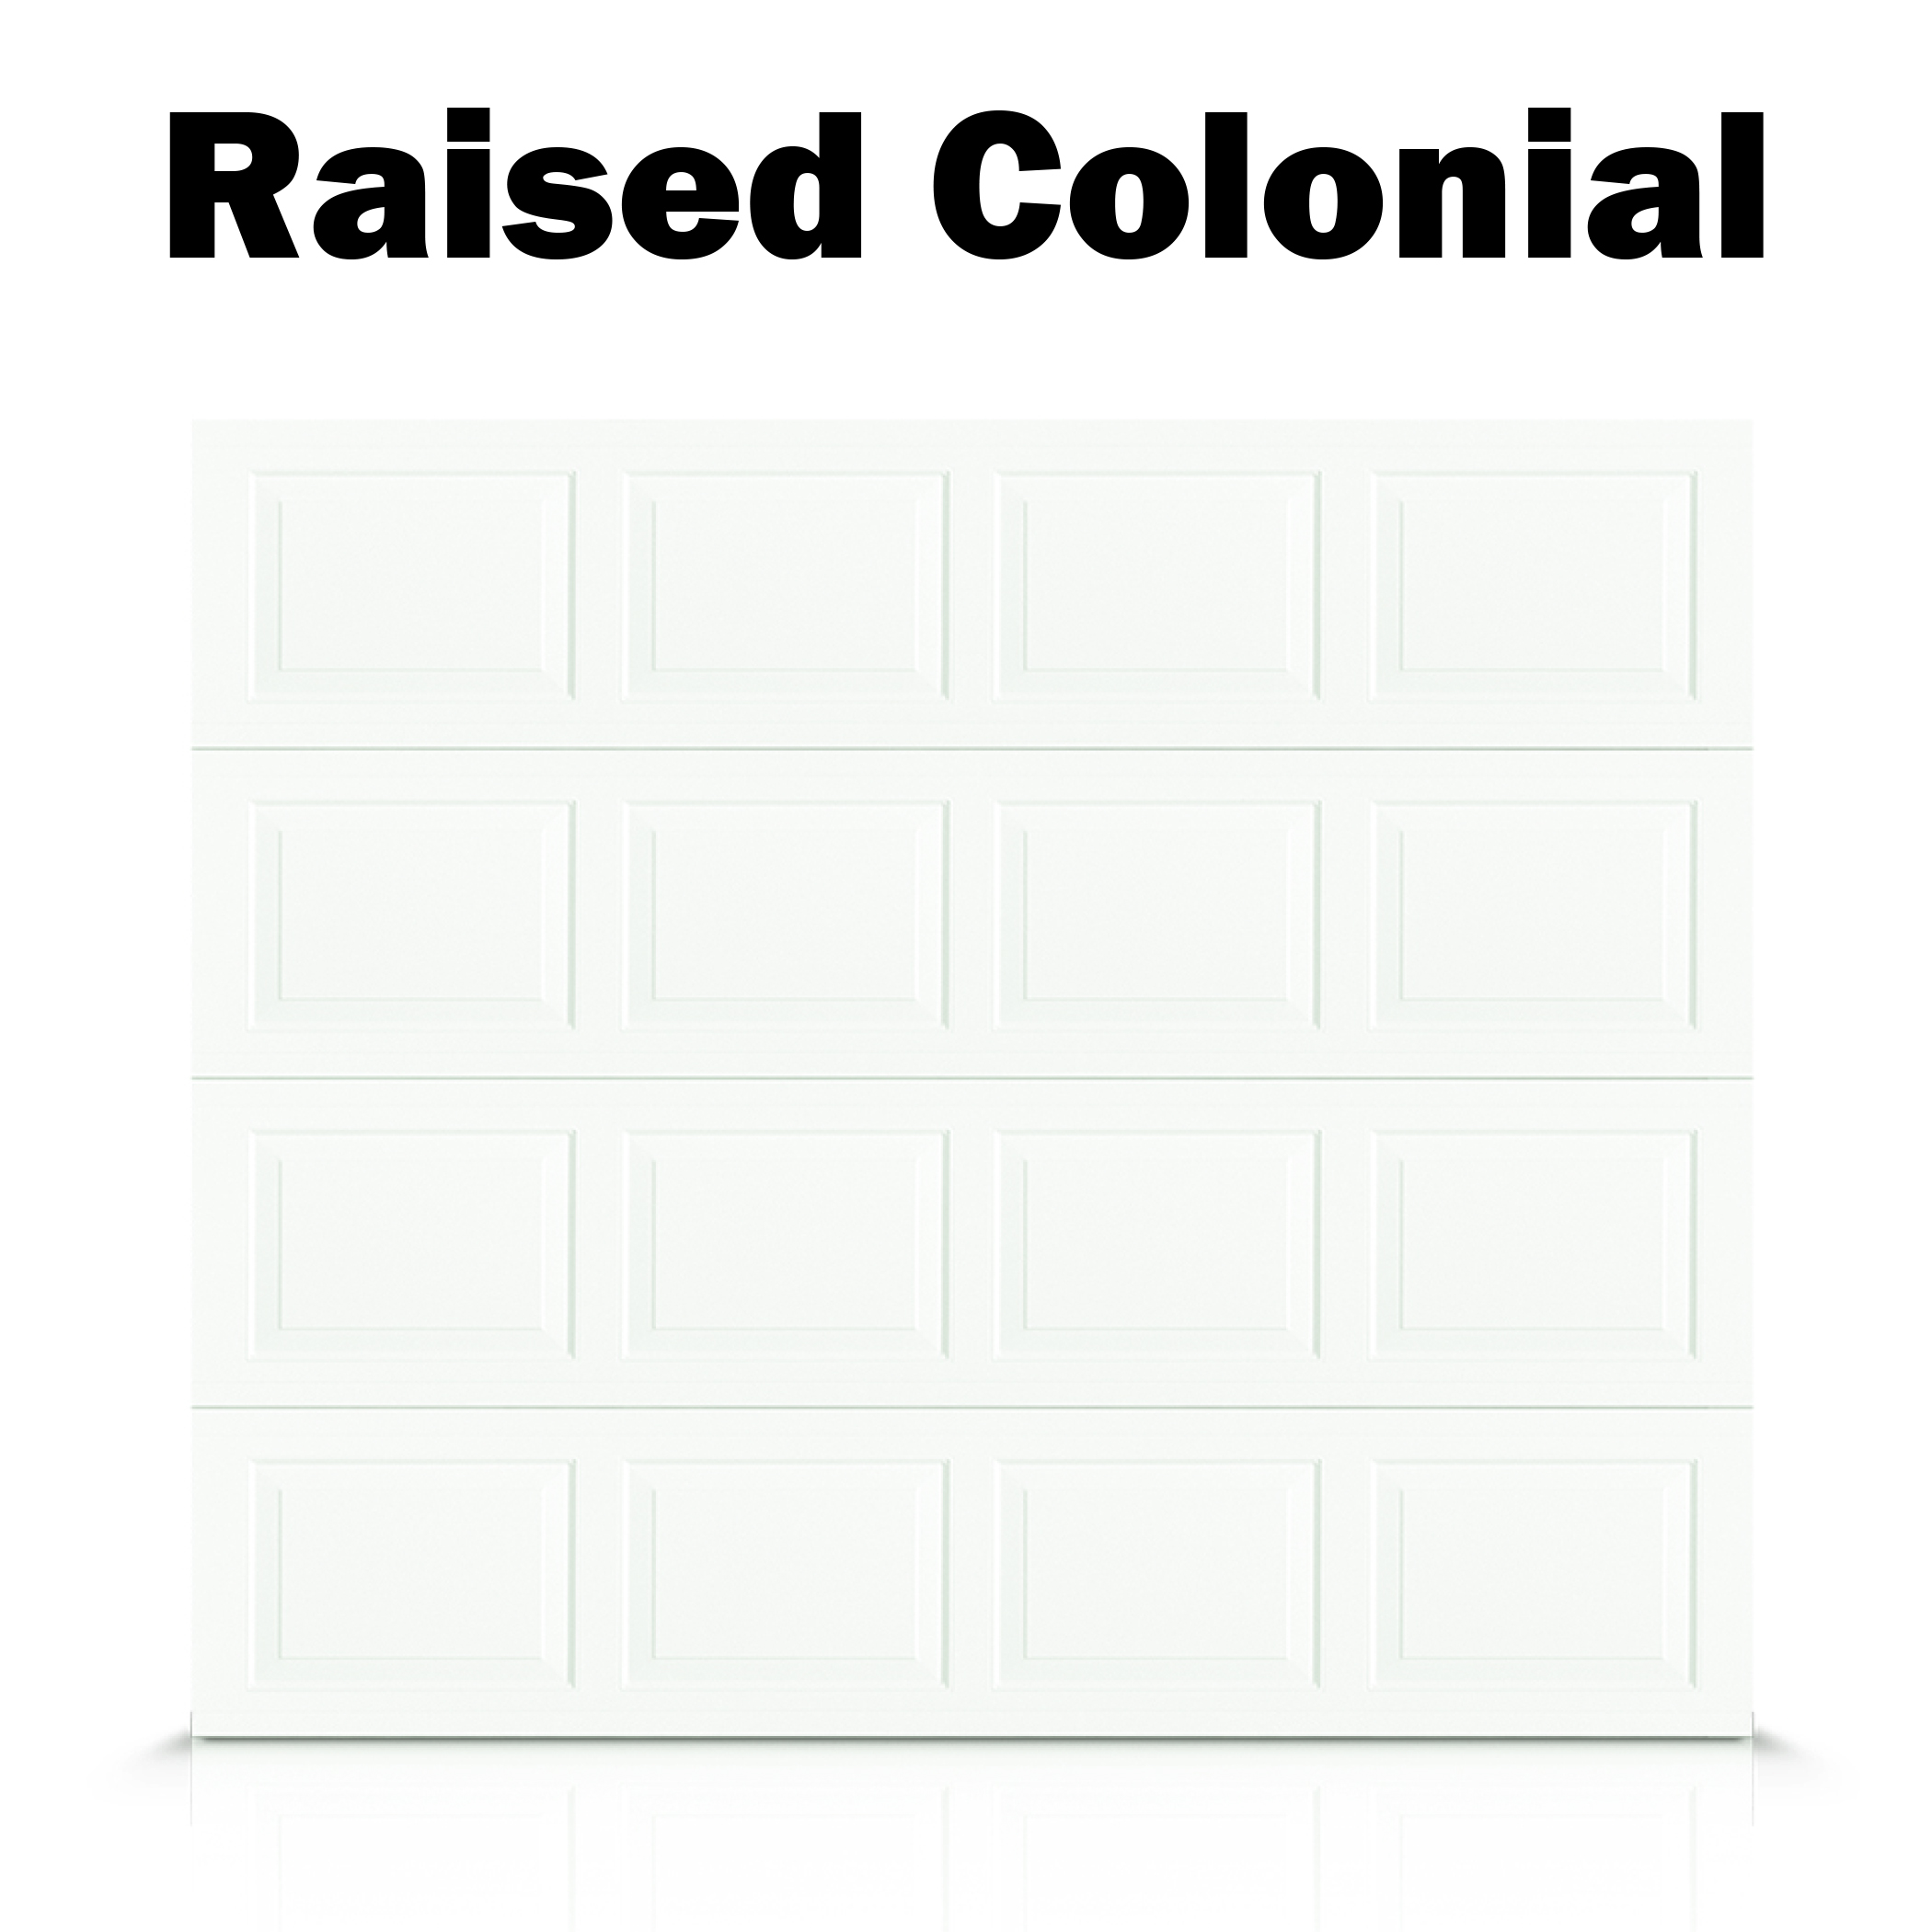 Raised Colonial - Classic.jpg